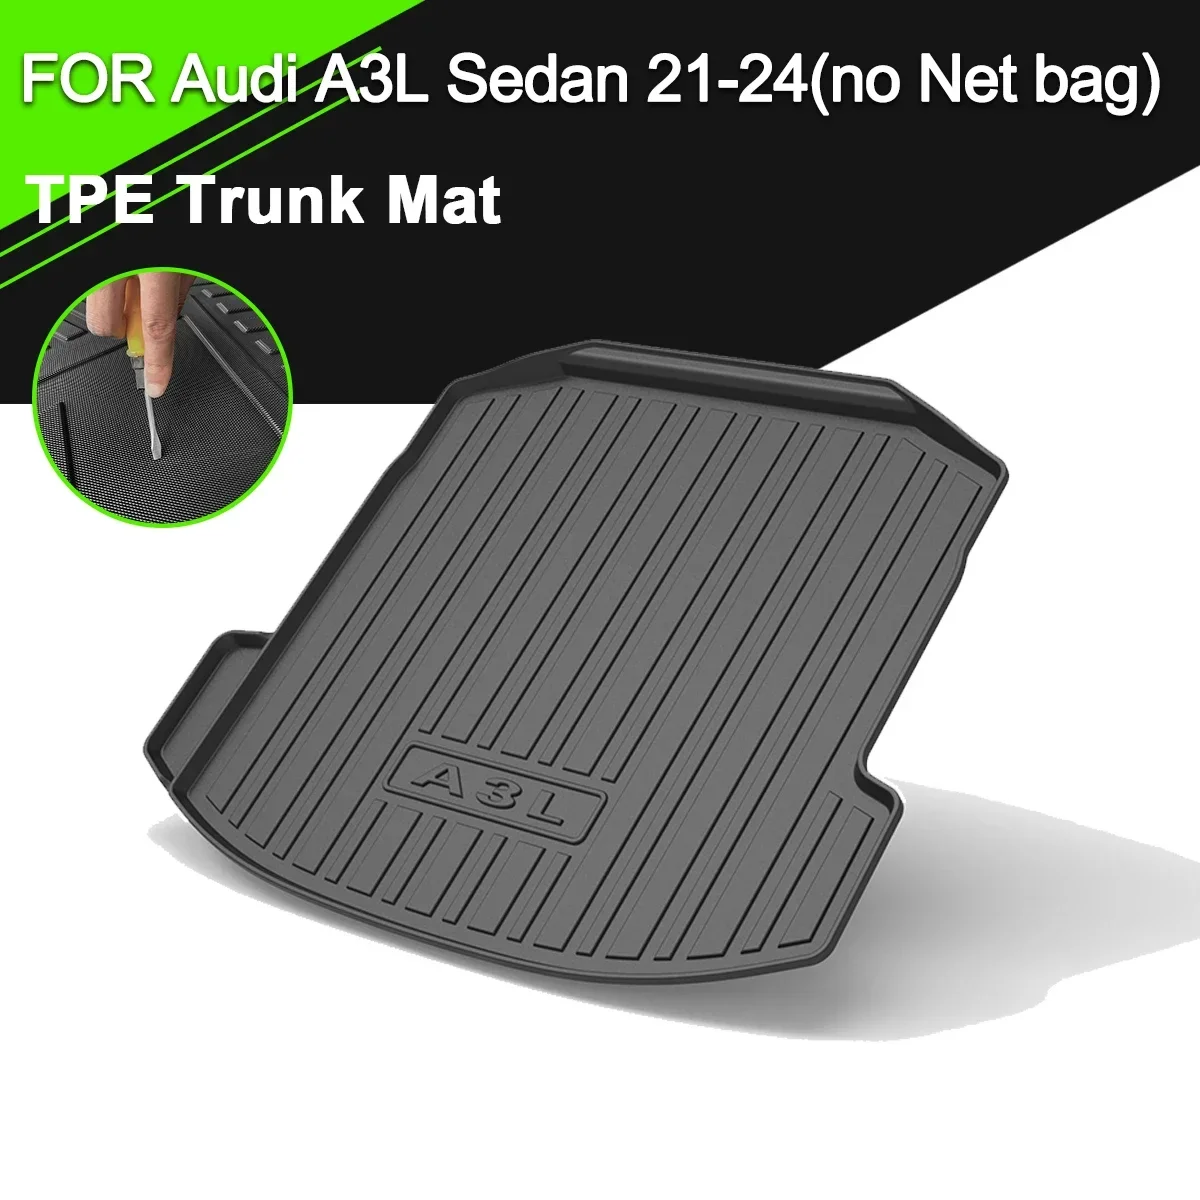 

Коврик для багажника из ТПЭ для Audi A3L Sedan 21-24 (без сетчатой сумки), автомобильная Водонепроницаемая нескользящая резиновая подкладка для груза, аксессуары